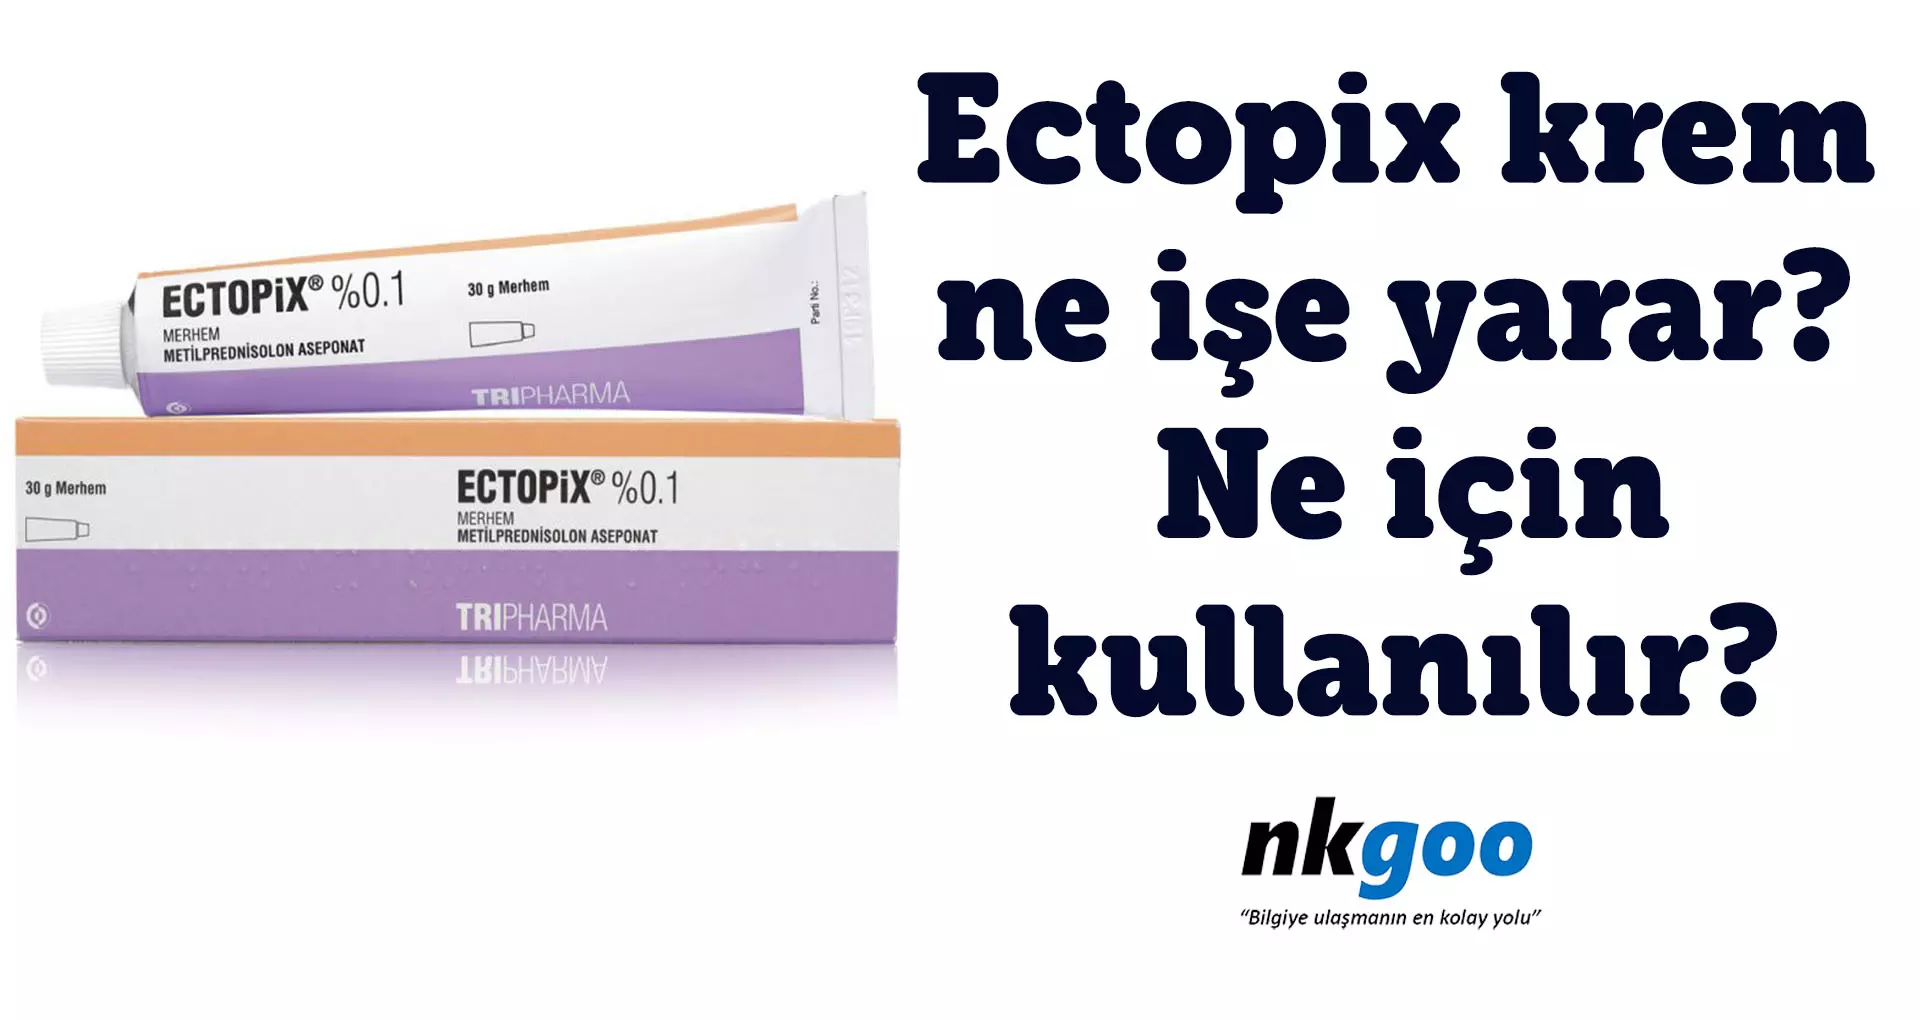 Ectopix krem ne işe yarar? Ne için kullanılır?